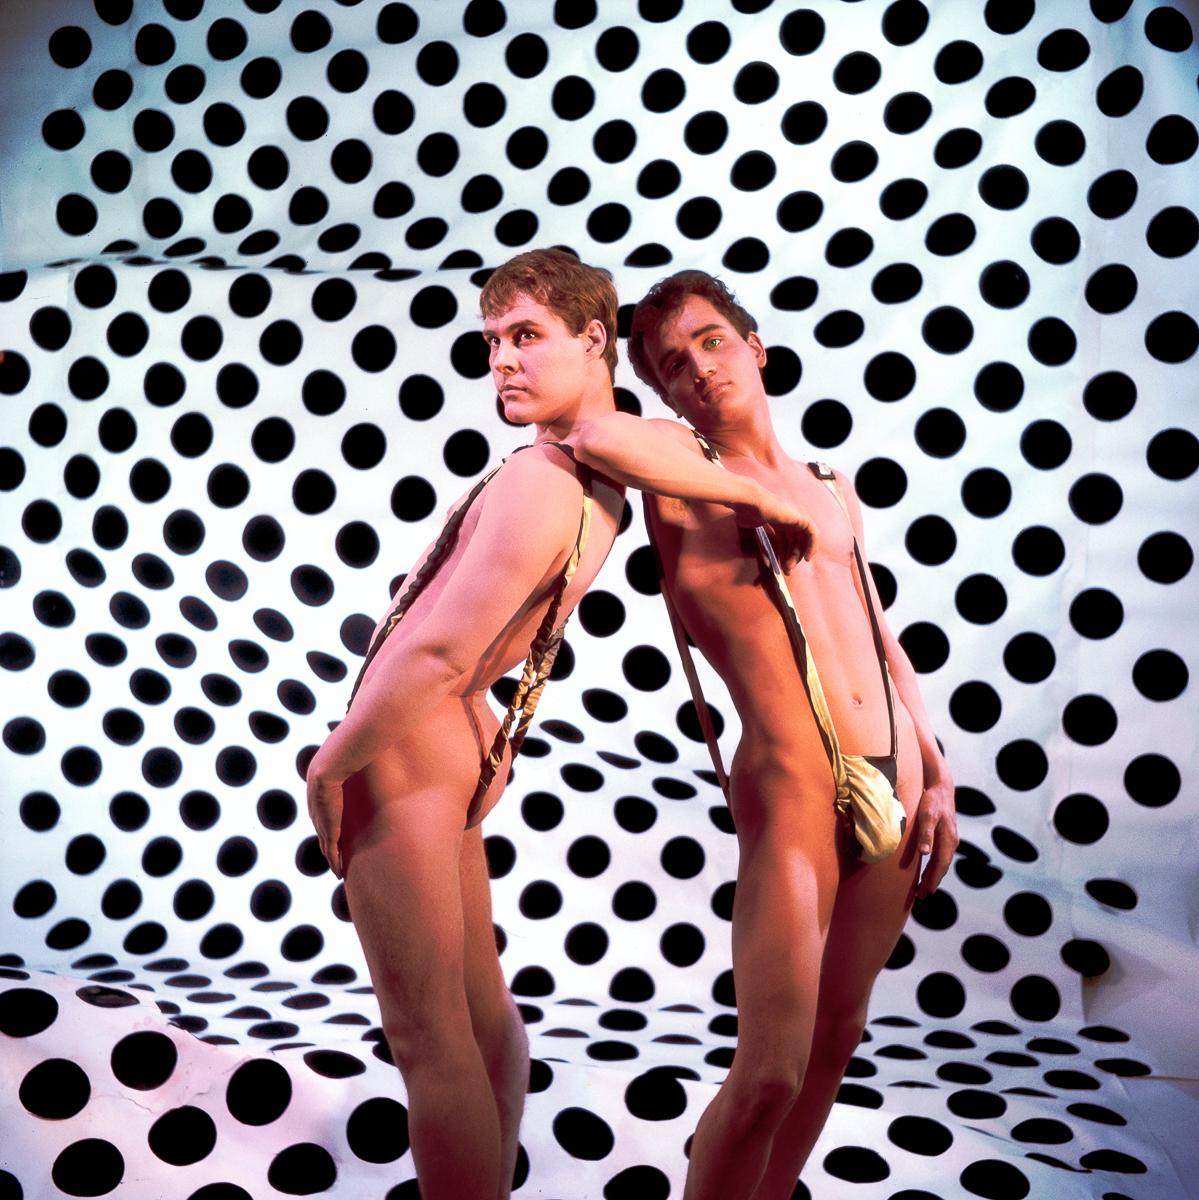 James Bidgood Nude Photograph – Op-Art